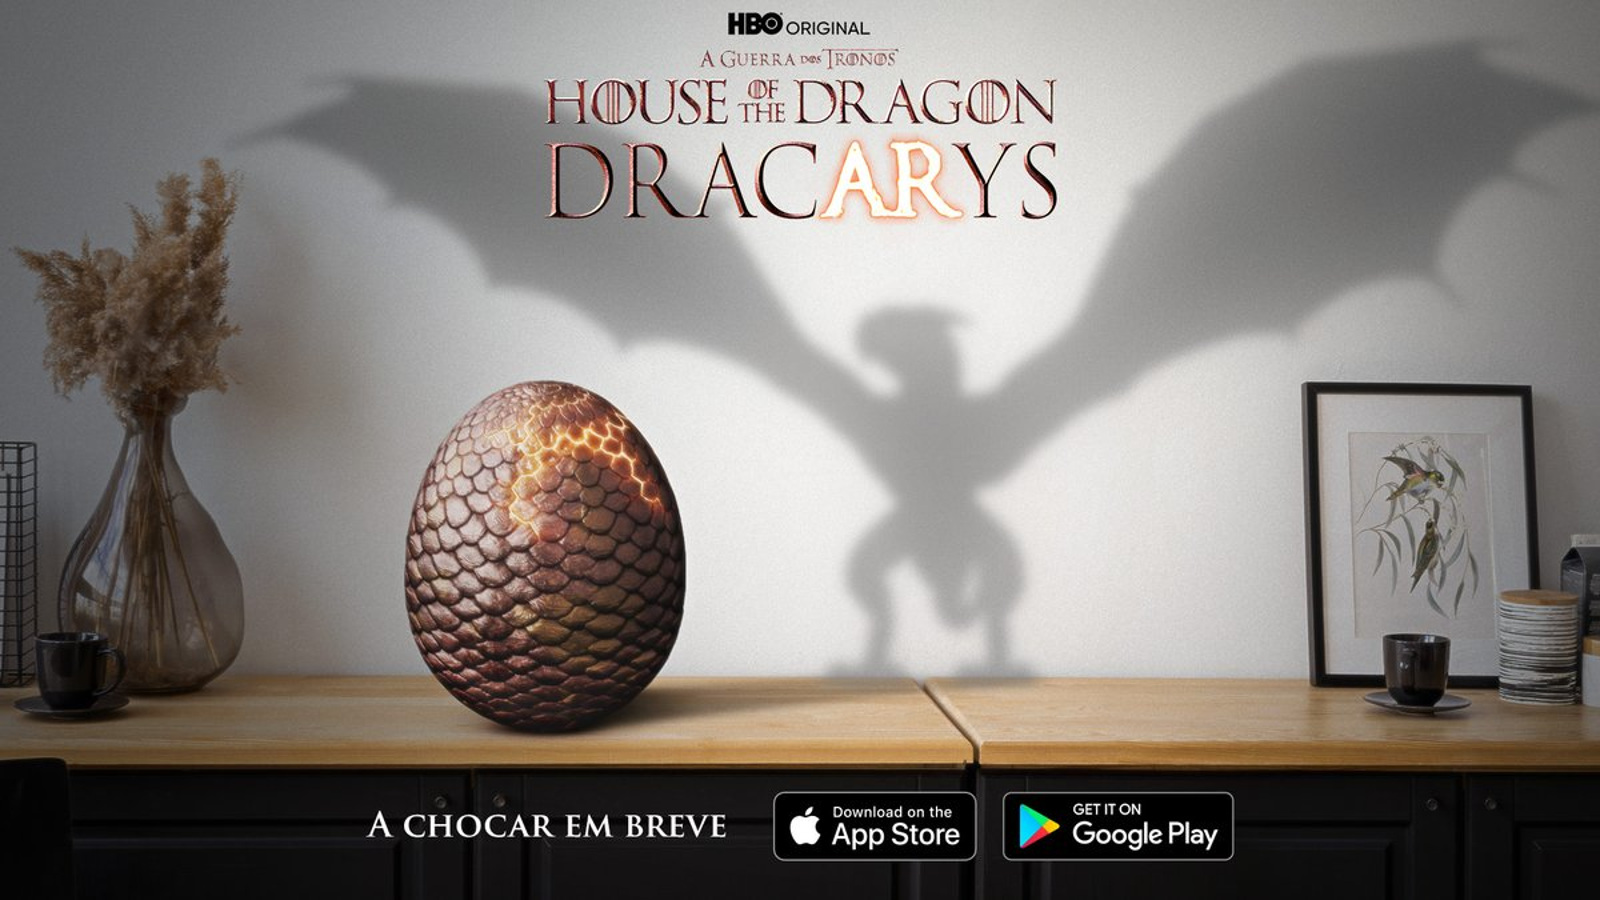 House of The Dragon estreia em 2022